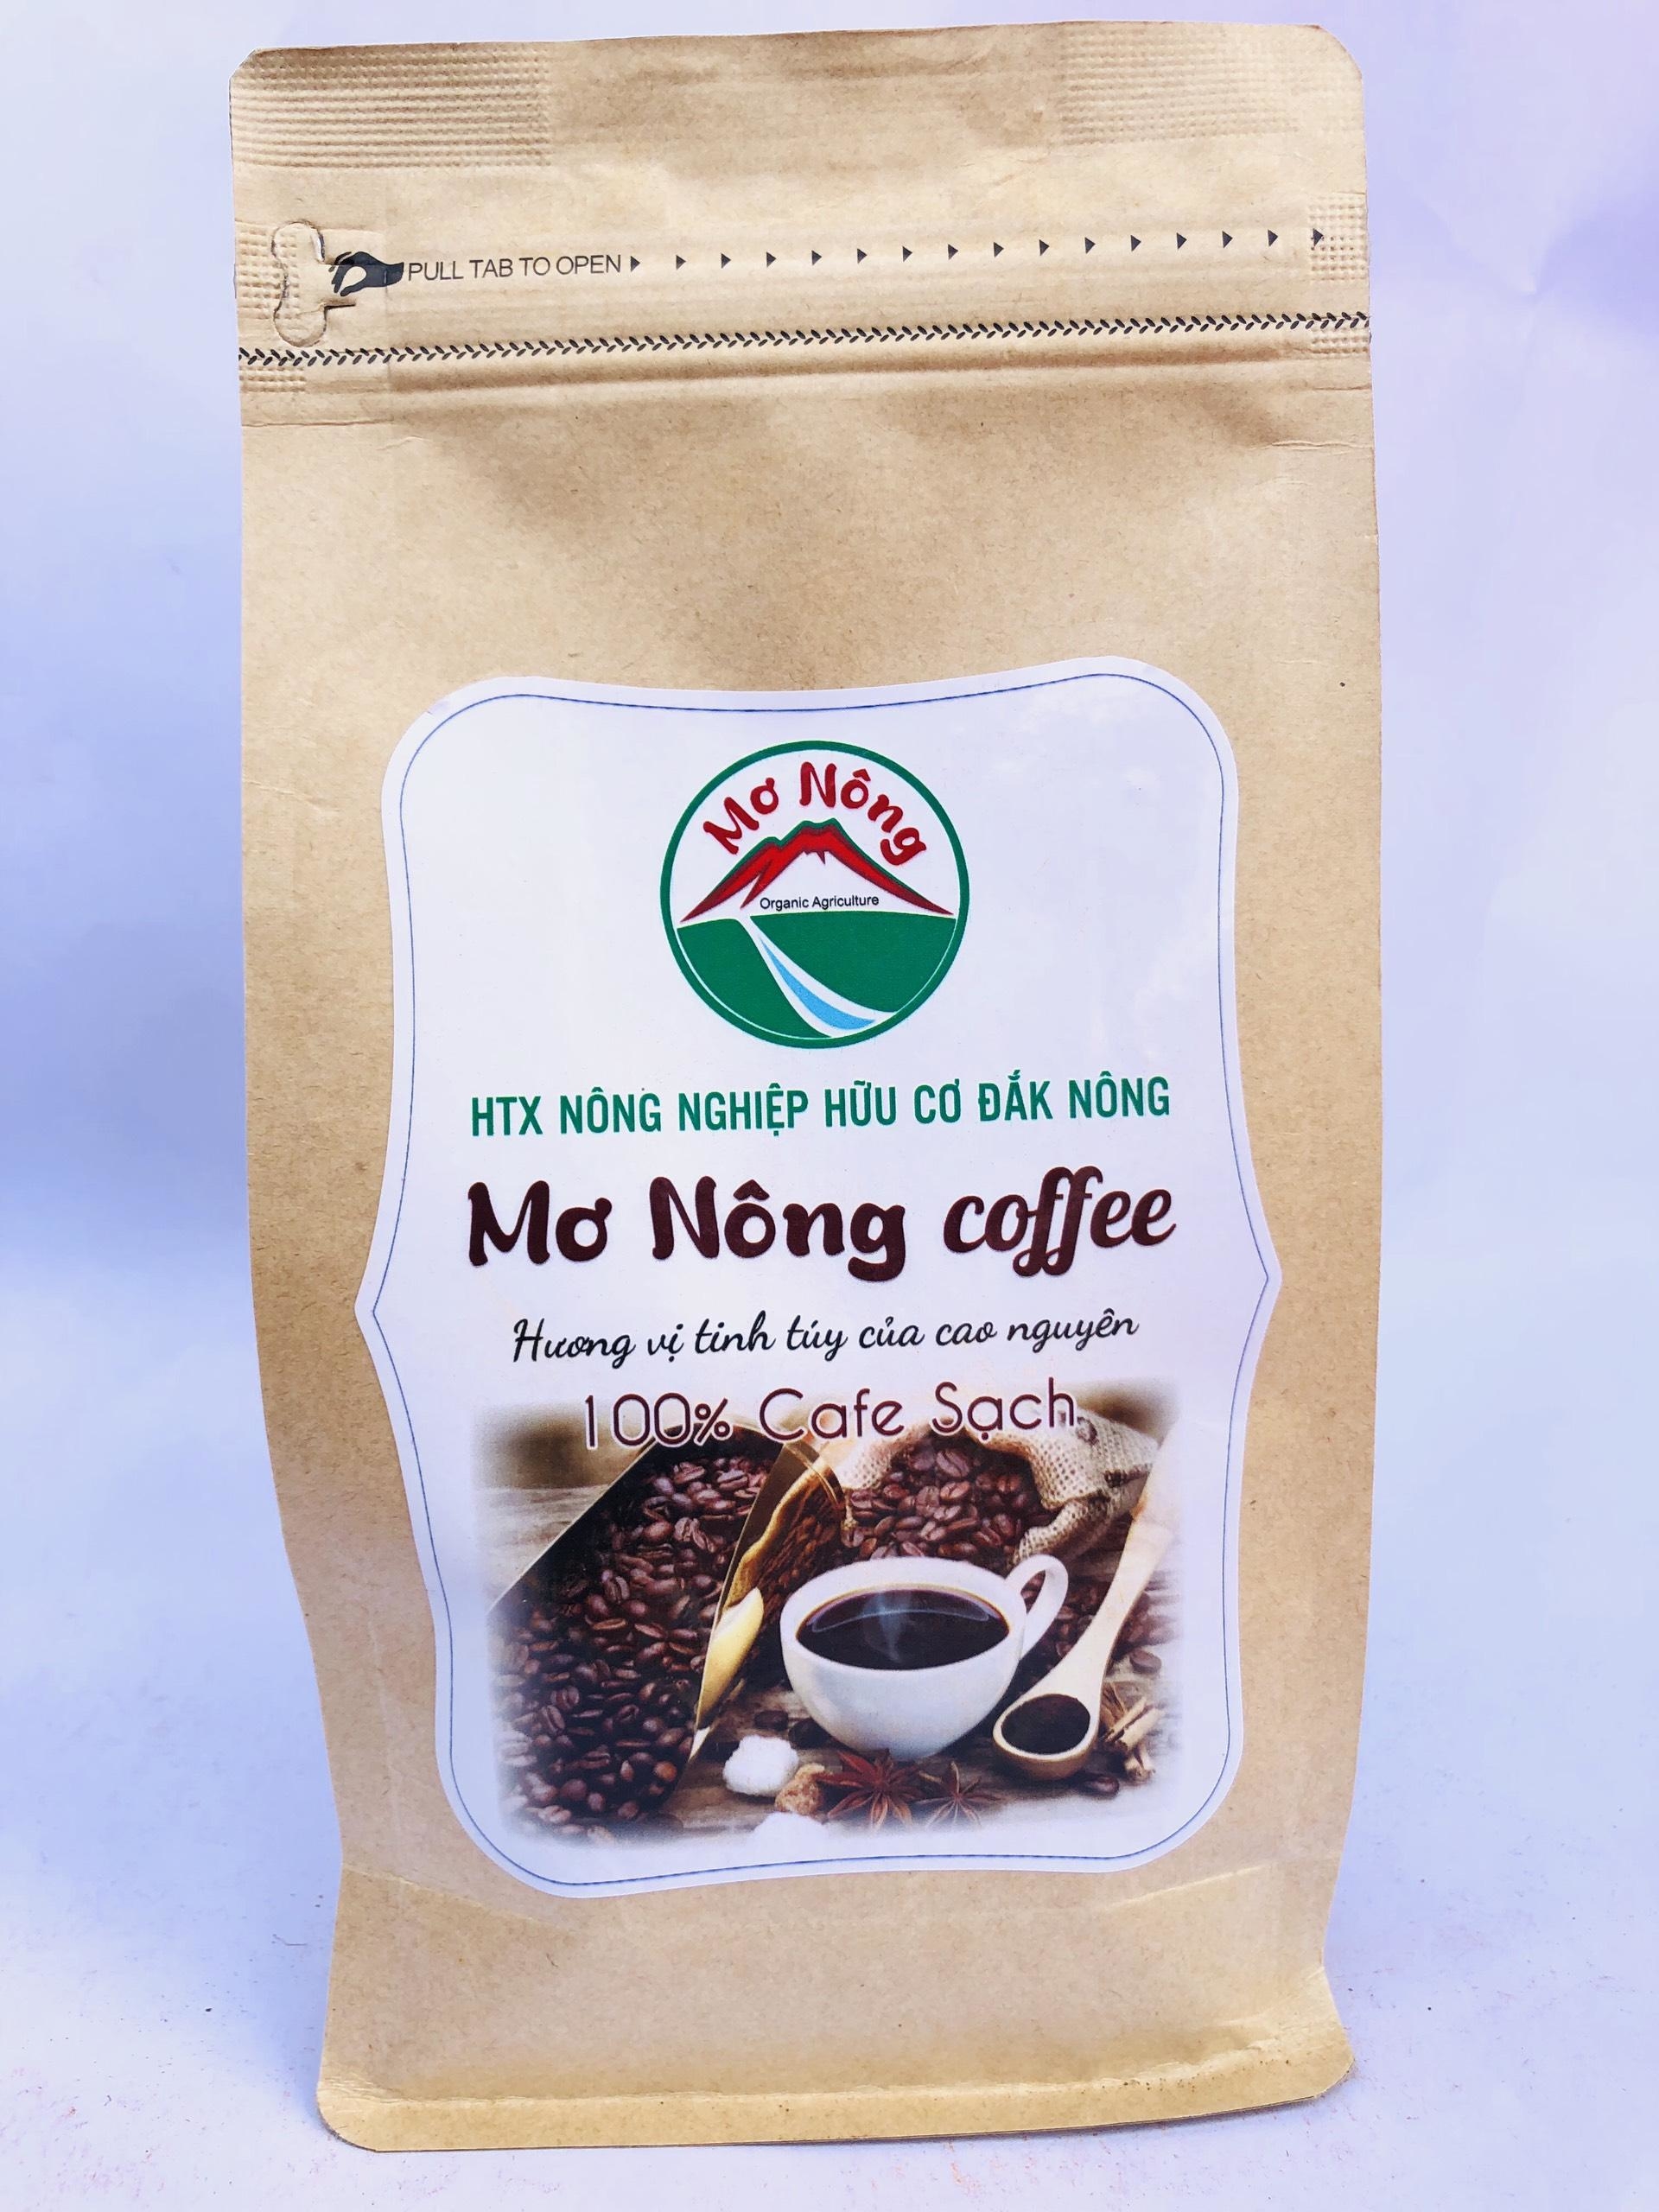 Cà phê sạch - Mơ Nông coffee